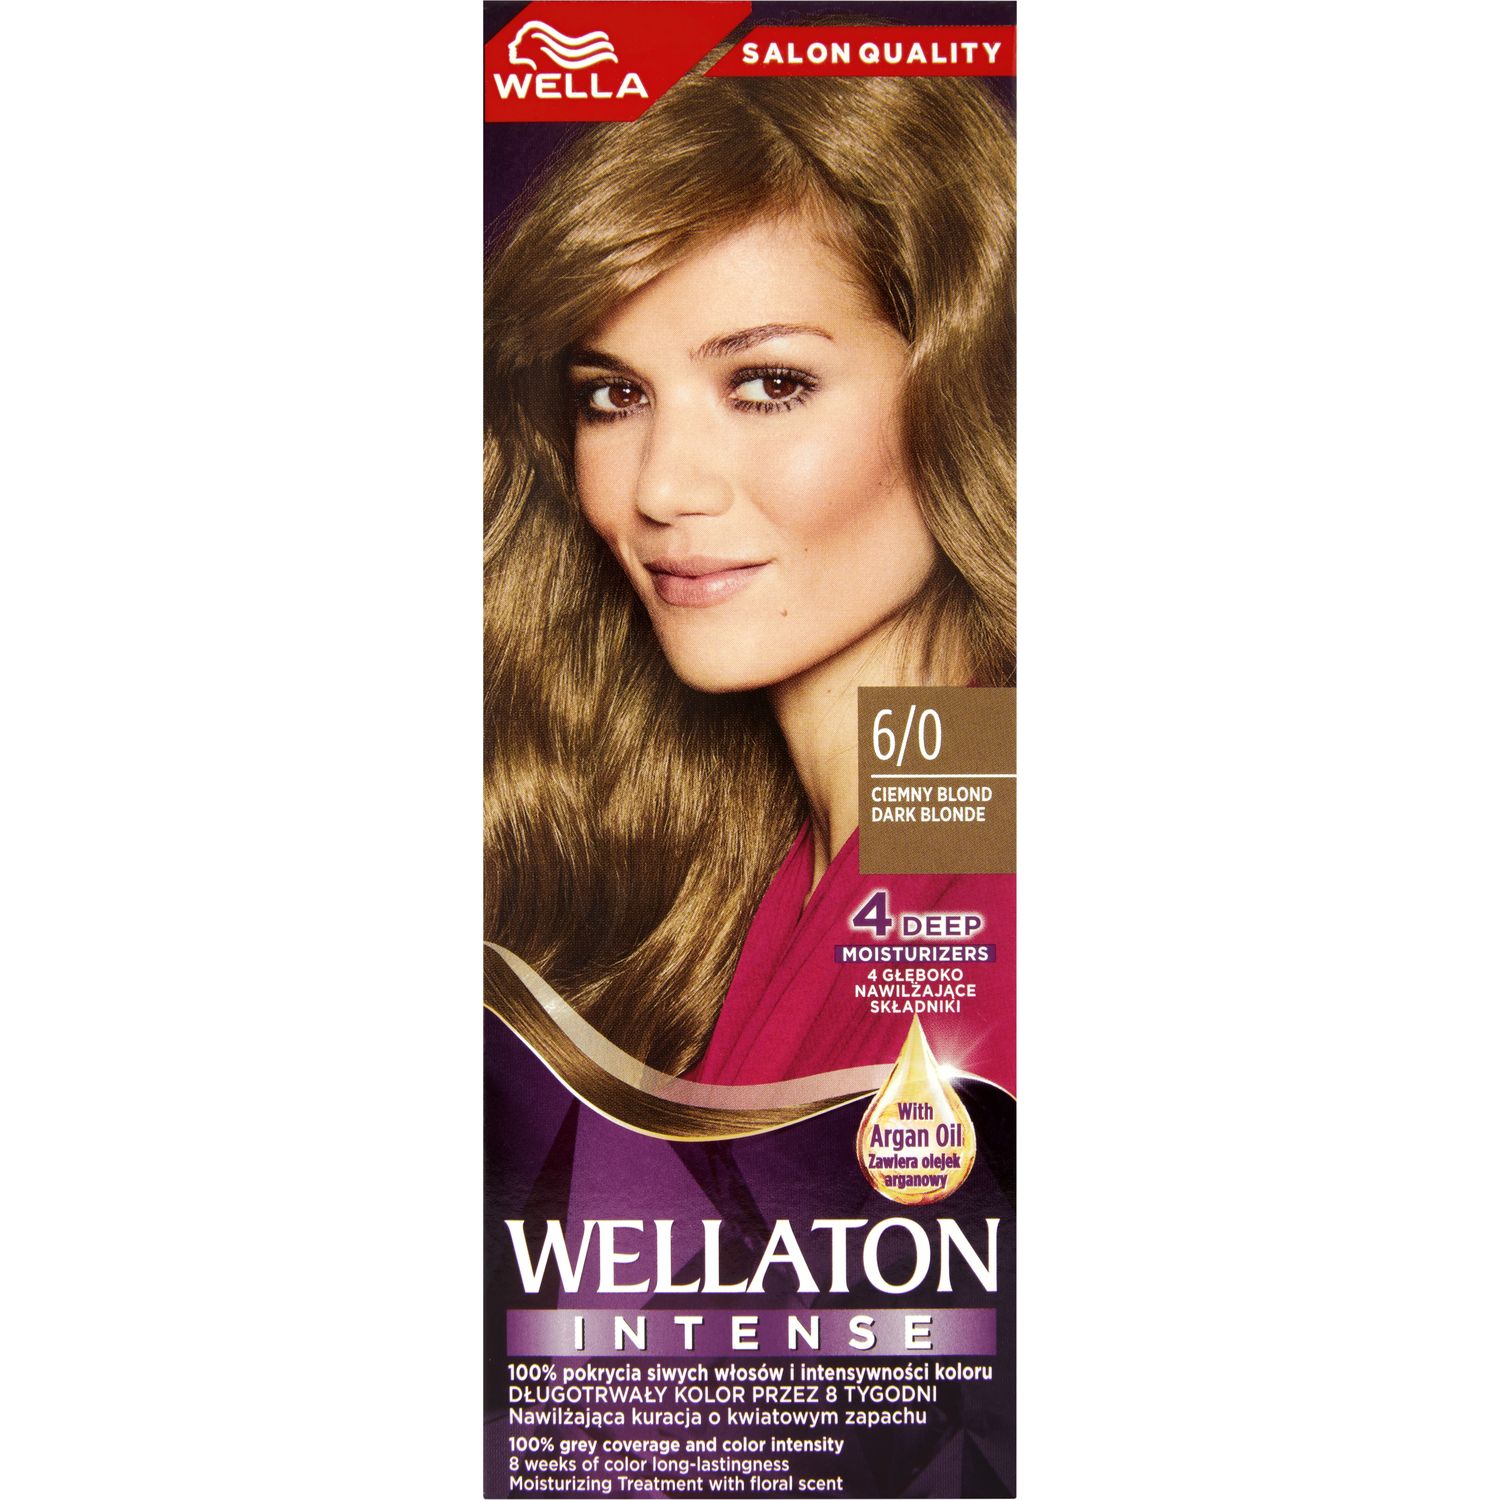 Інтенсивна крем-фарба для волосся Wellaton, відтінок 6/0 (Темний блонд), 110 мл - фото 2